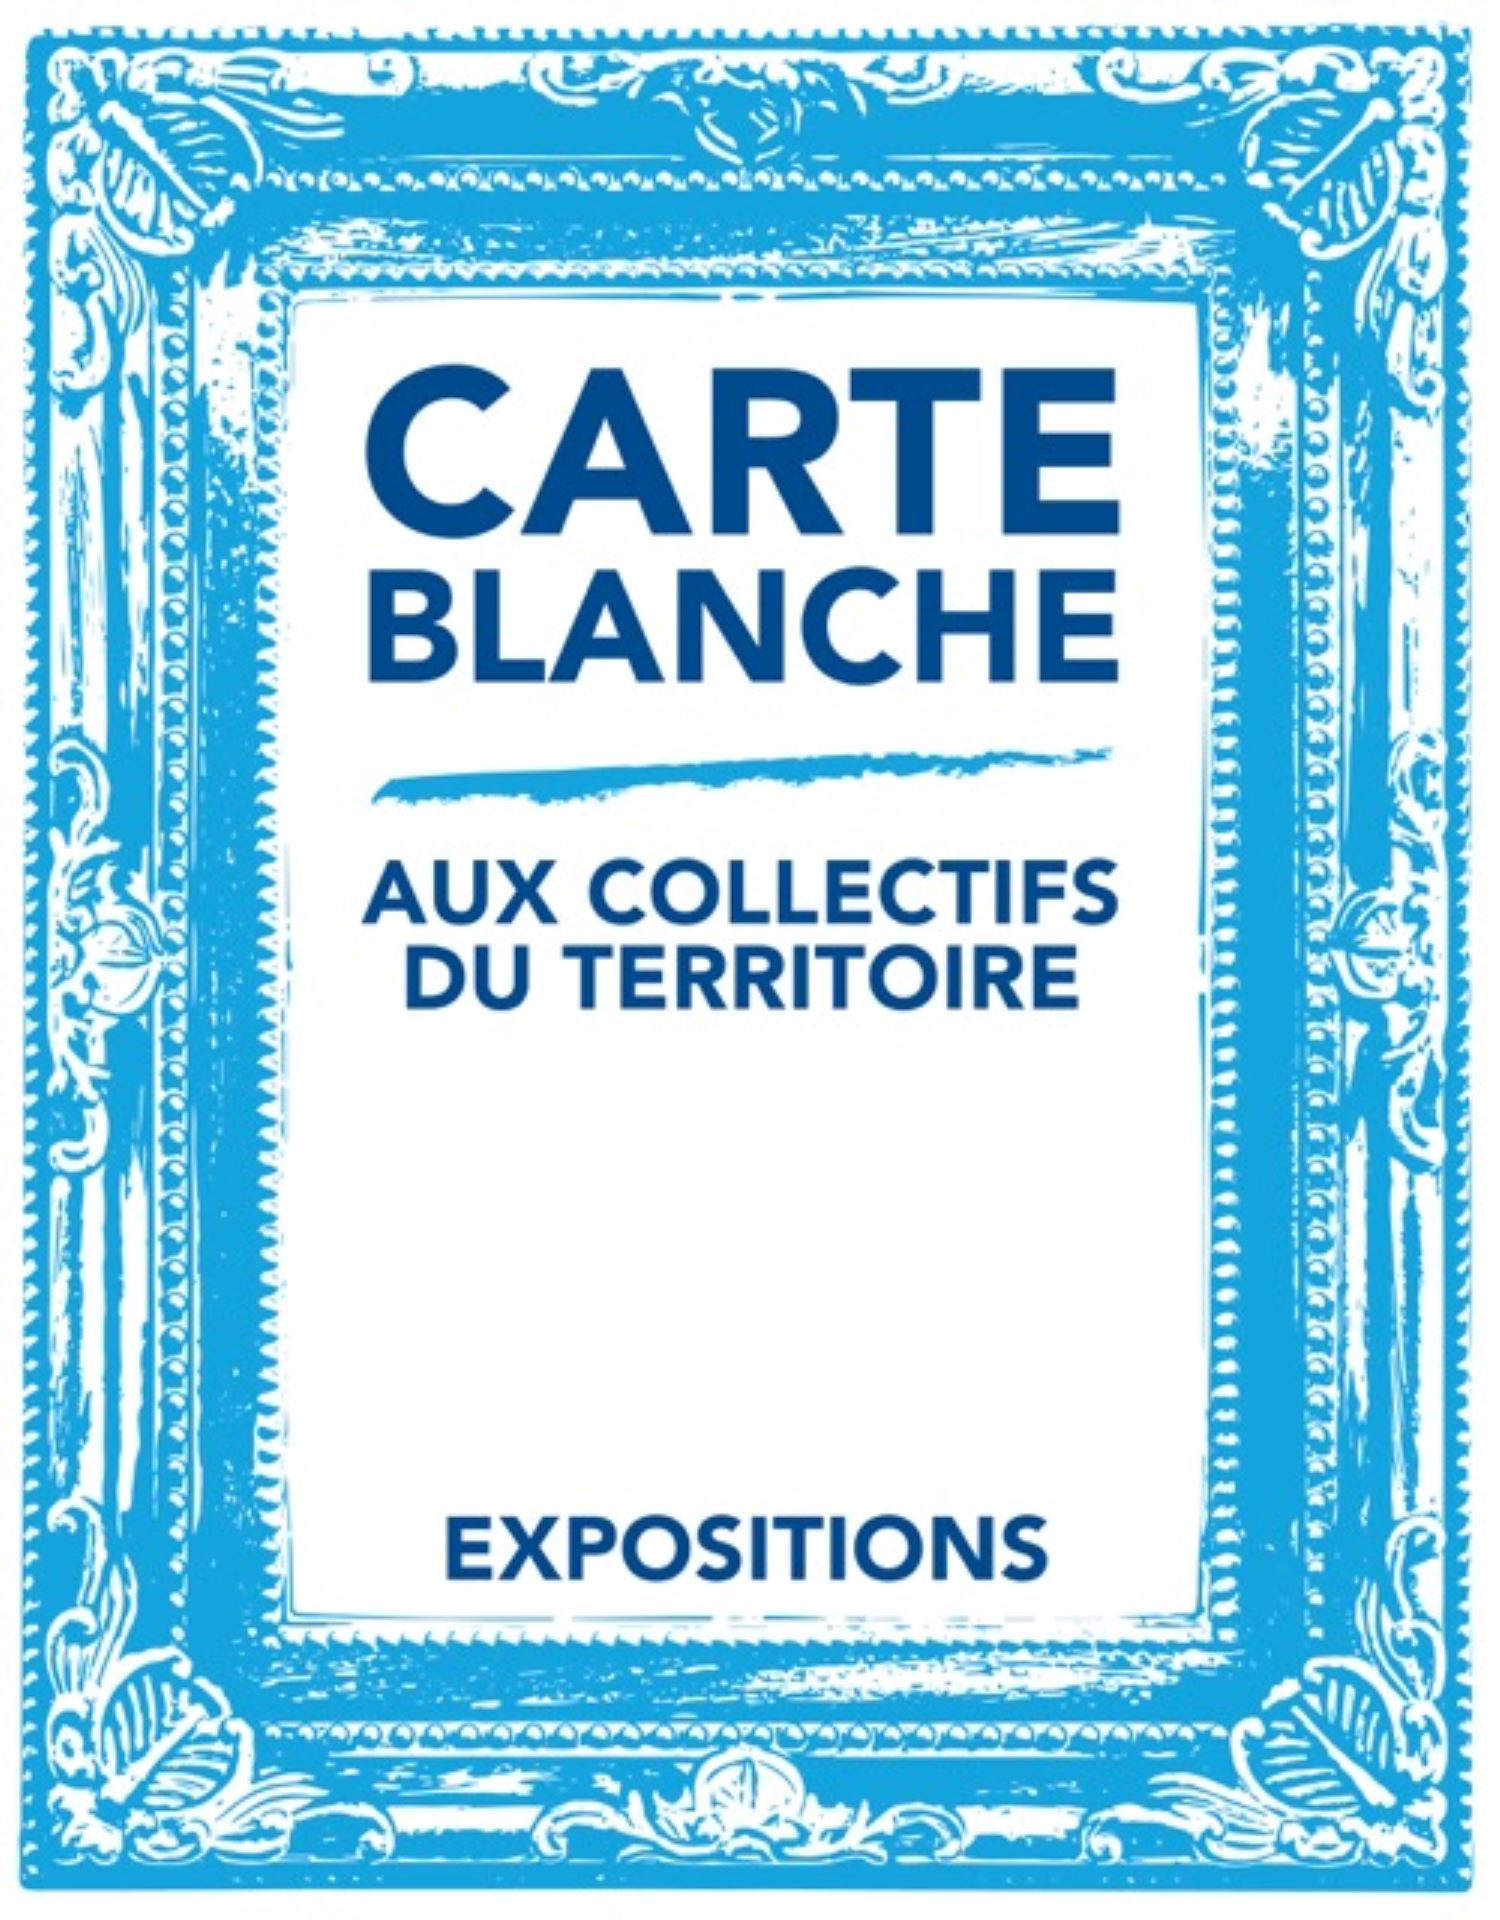 CARTE BLANCHE AUX COLLECTIFS DU TERRITOIRE©